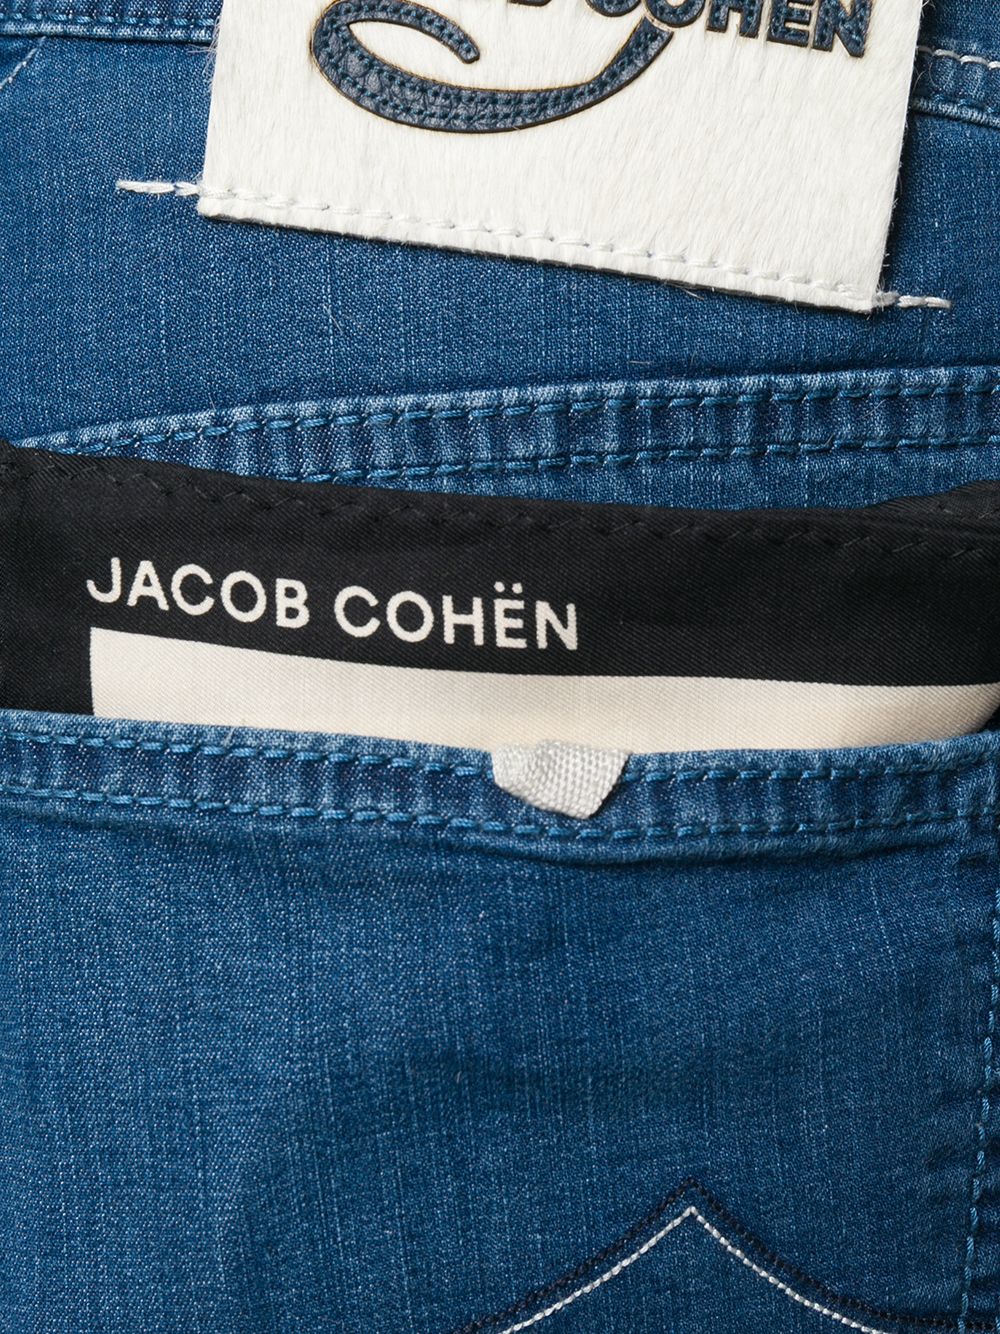 фото Jacob cohen джинсовые шорты строгого кроя